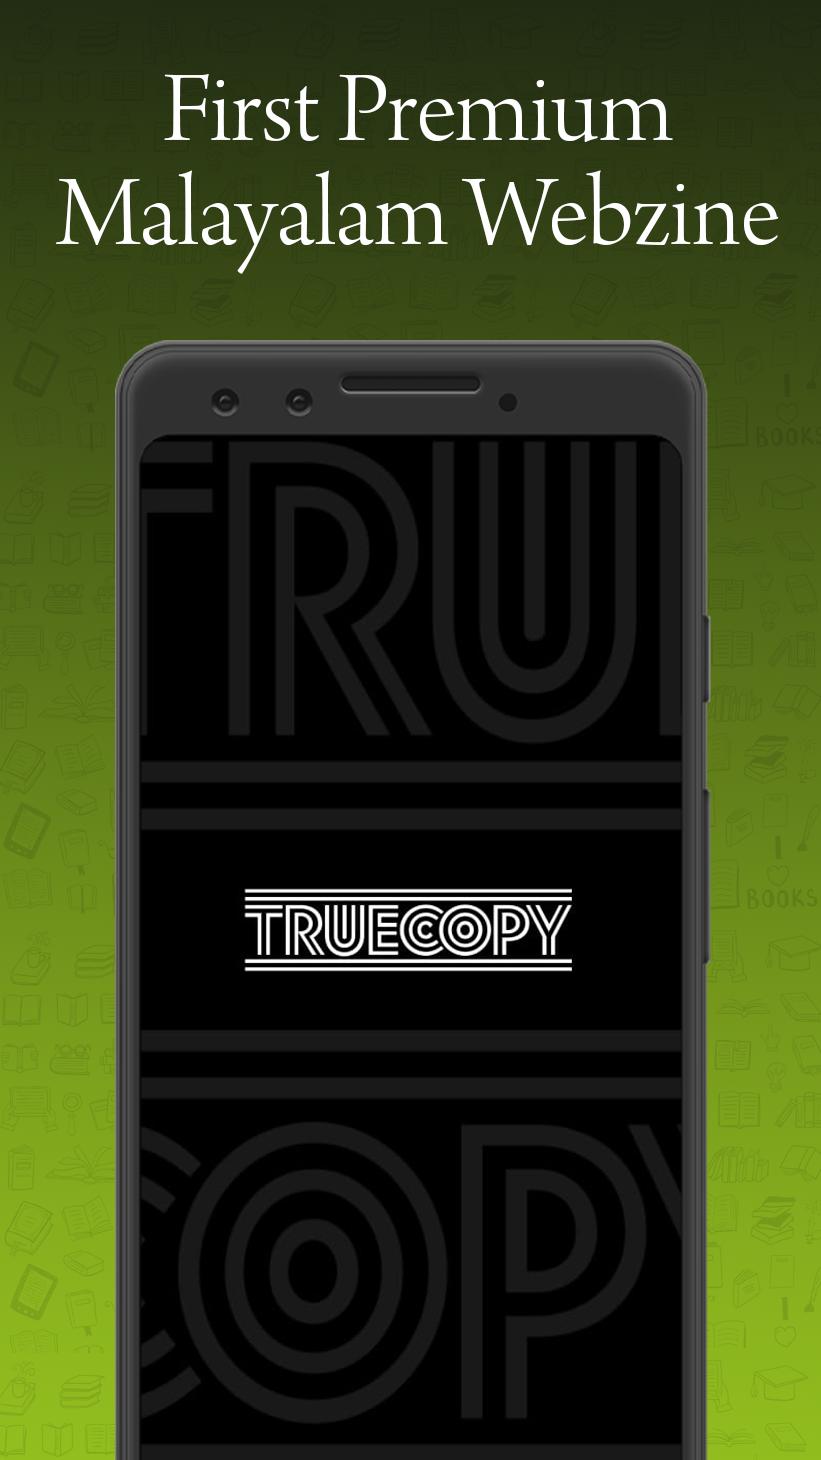 Truecopy Webzine 2.6 Screenshot 8